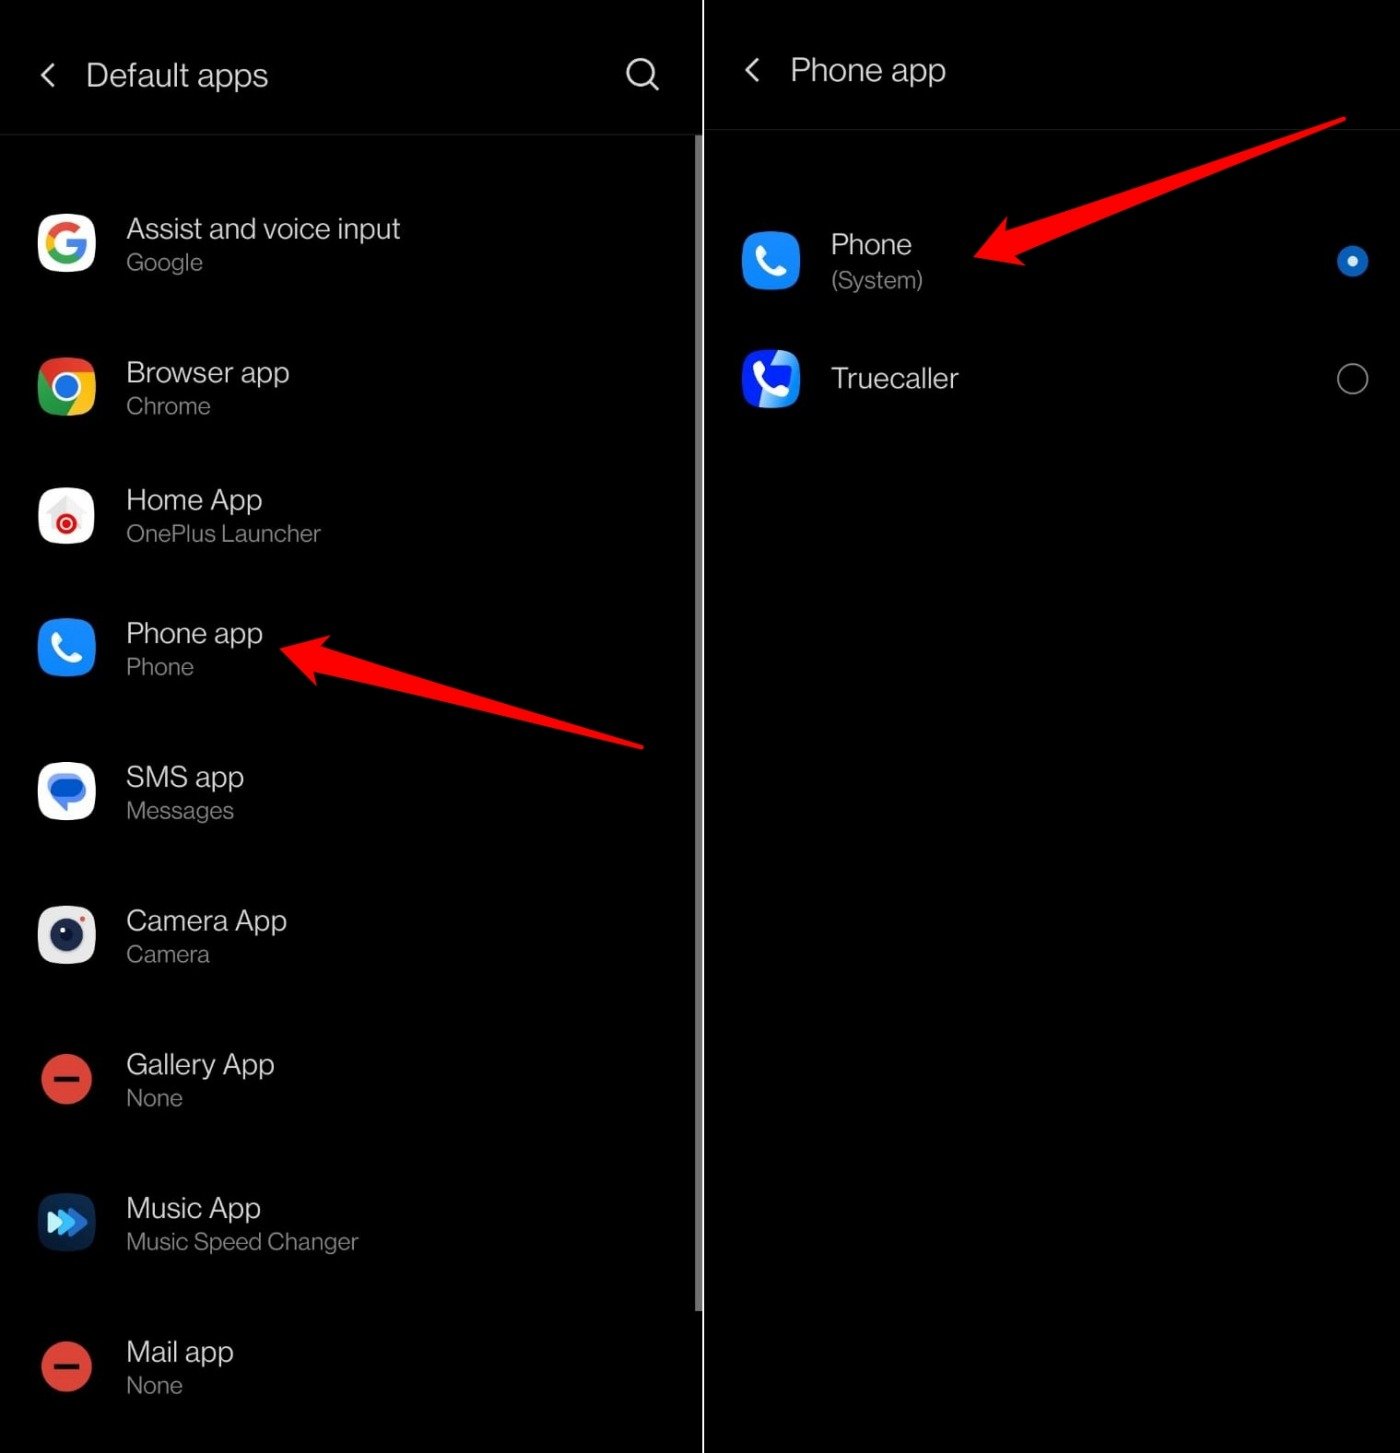 установить Google Phone в качестве приложения для звонков по умолчанию